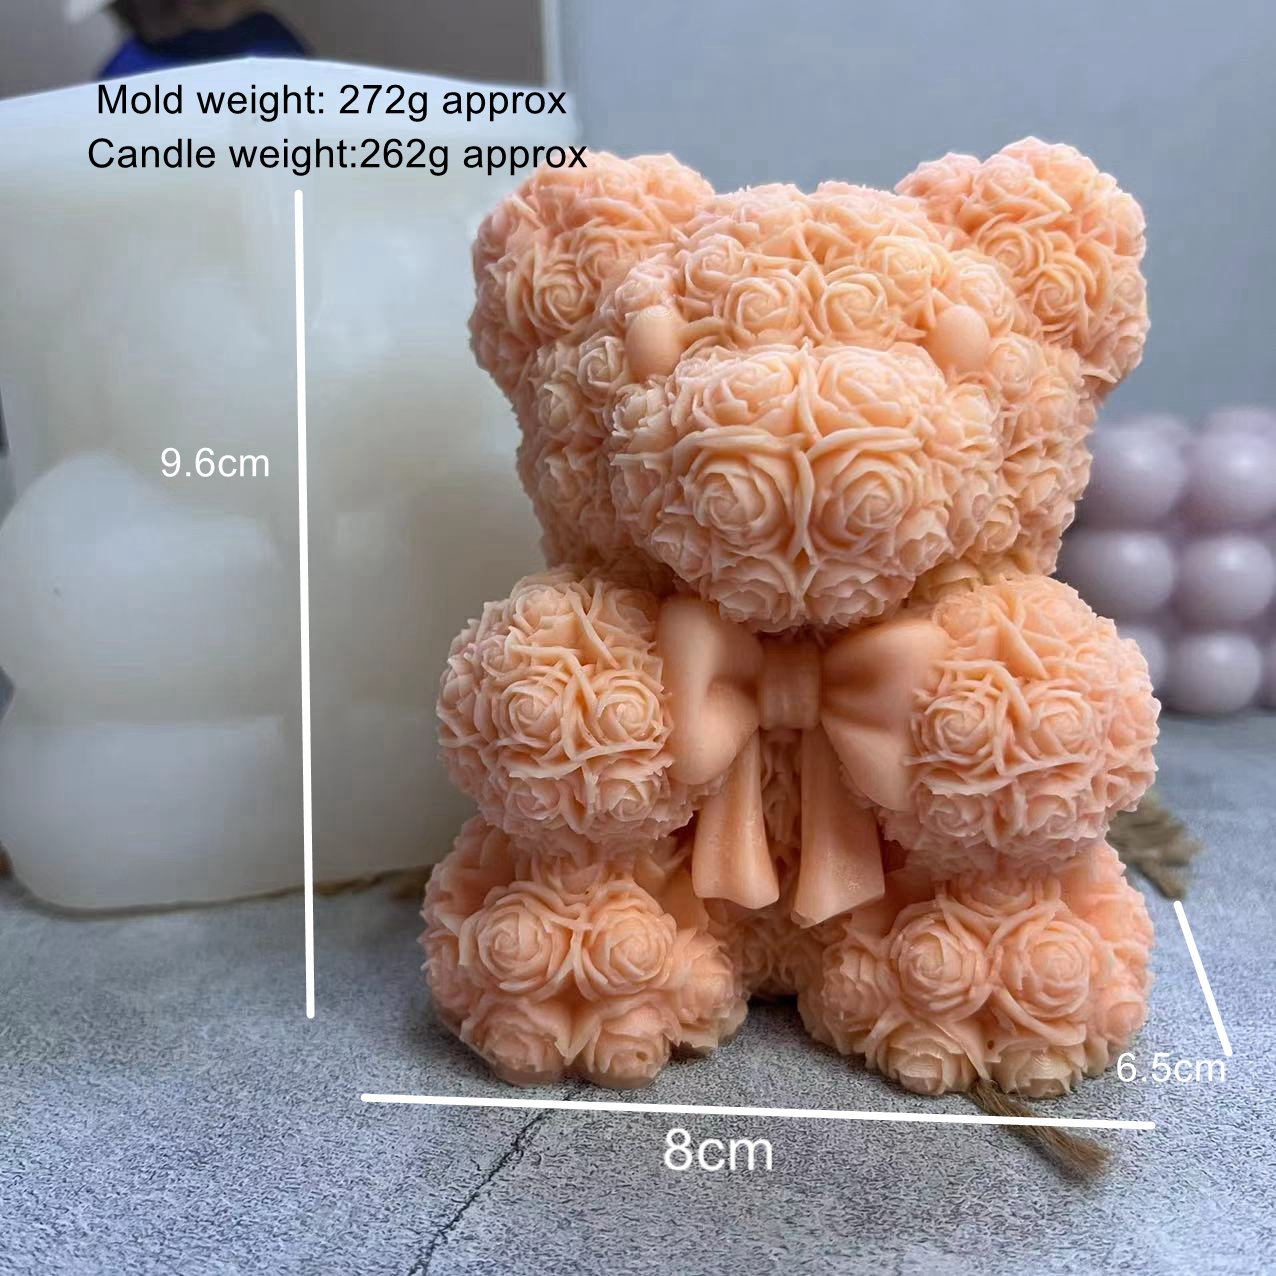 Silicone mold 17,8cm x 9,4cm - Robot bear